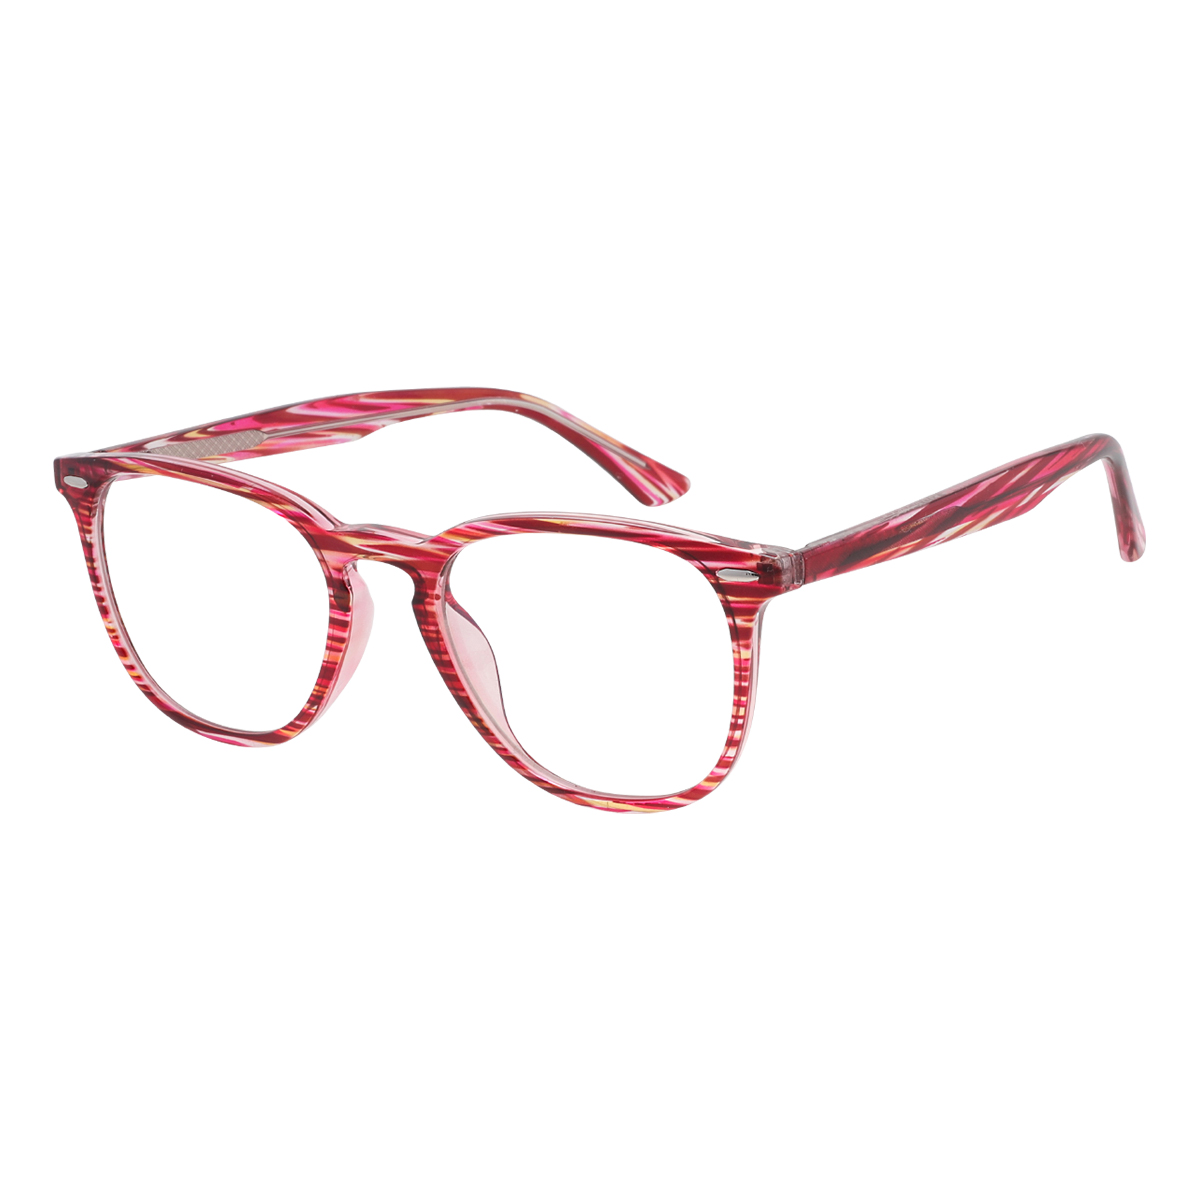 Nicolette - Square Red-Strip Reading Glasses for Men & Women